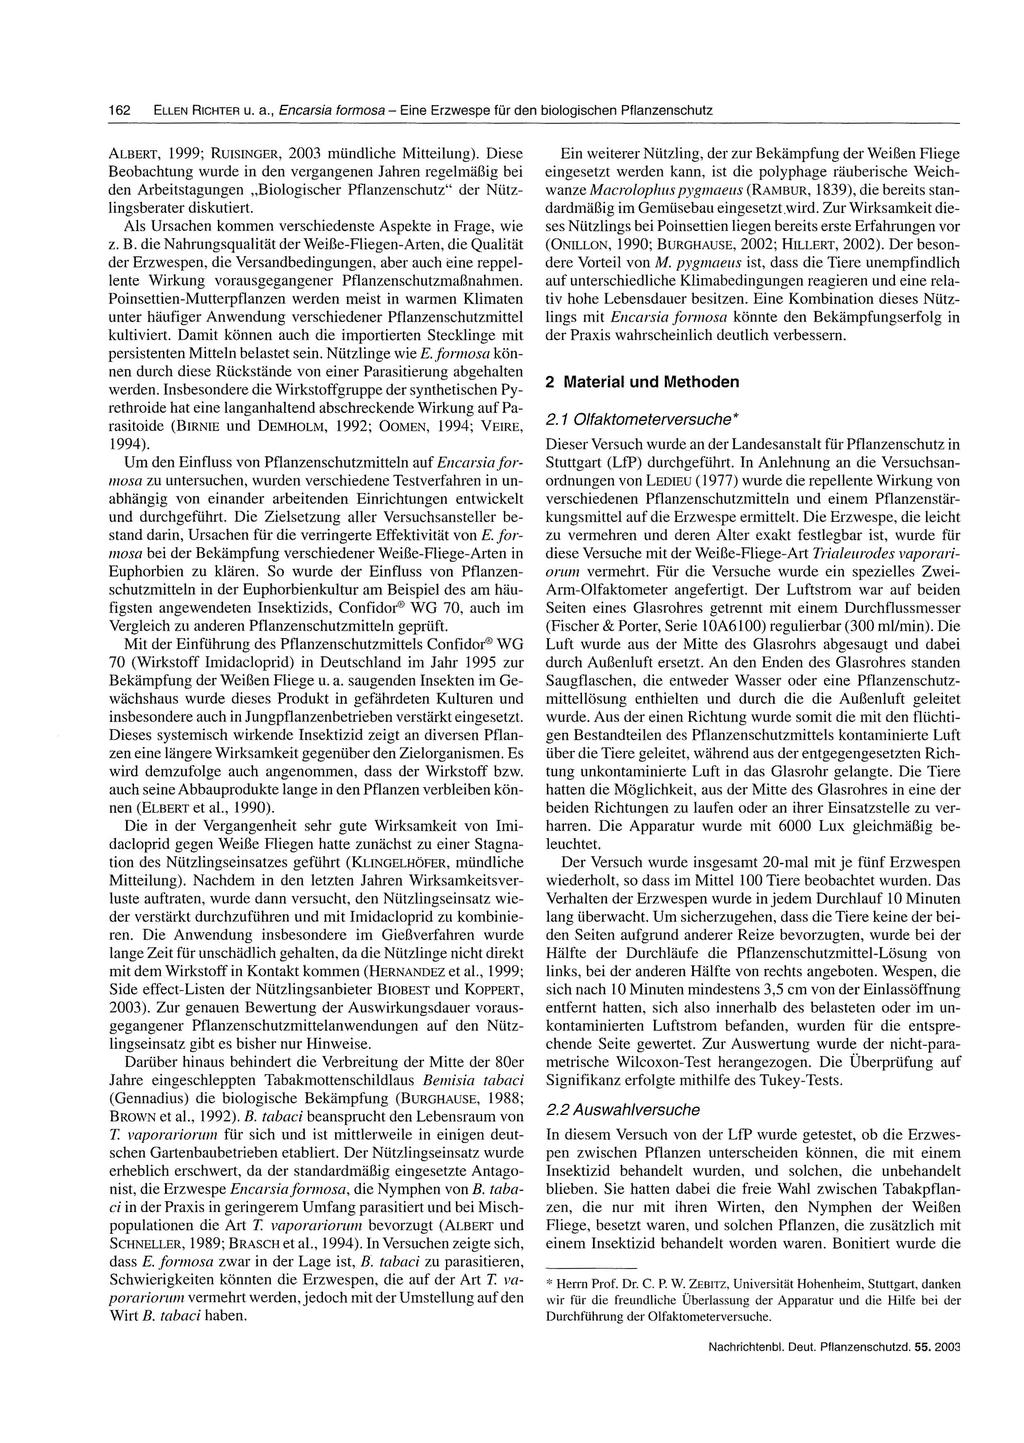 16 ELLEN RICHTER u. a., Encarsia formosa - Eine Erzwespe für den biologischen Pflanzenschutz ALBERT, 1999; RurSINGER, mündliche Mitteilung).